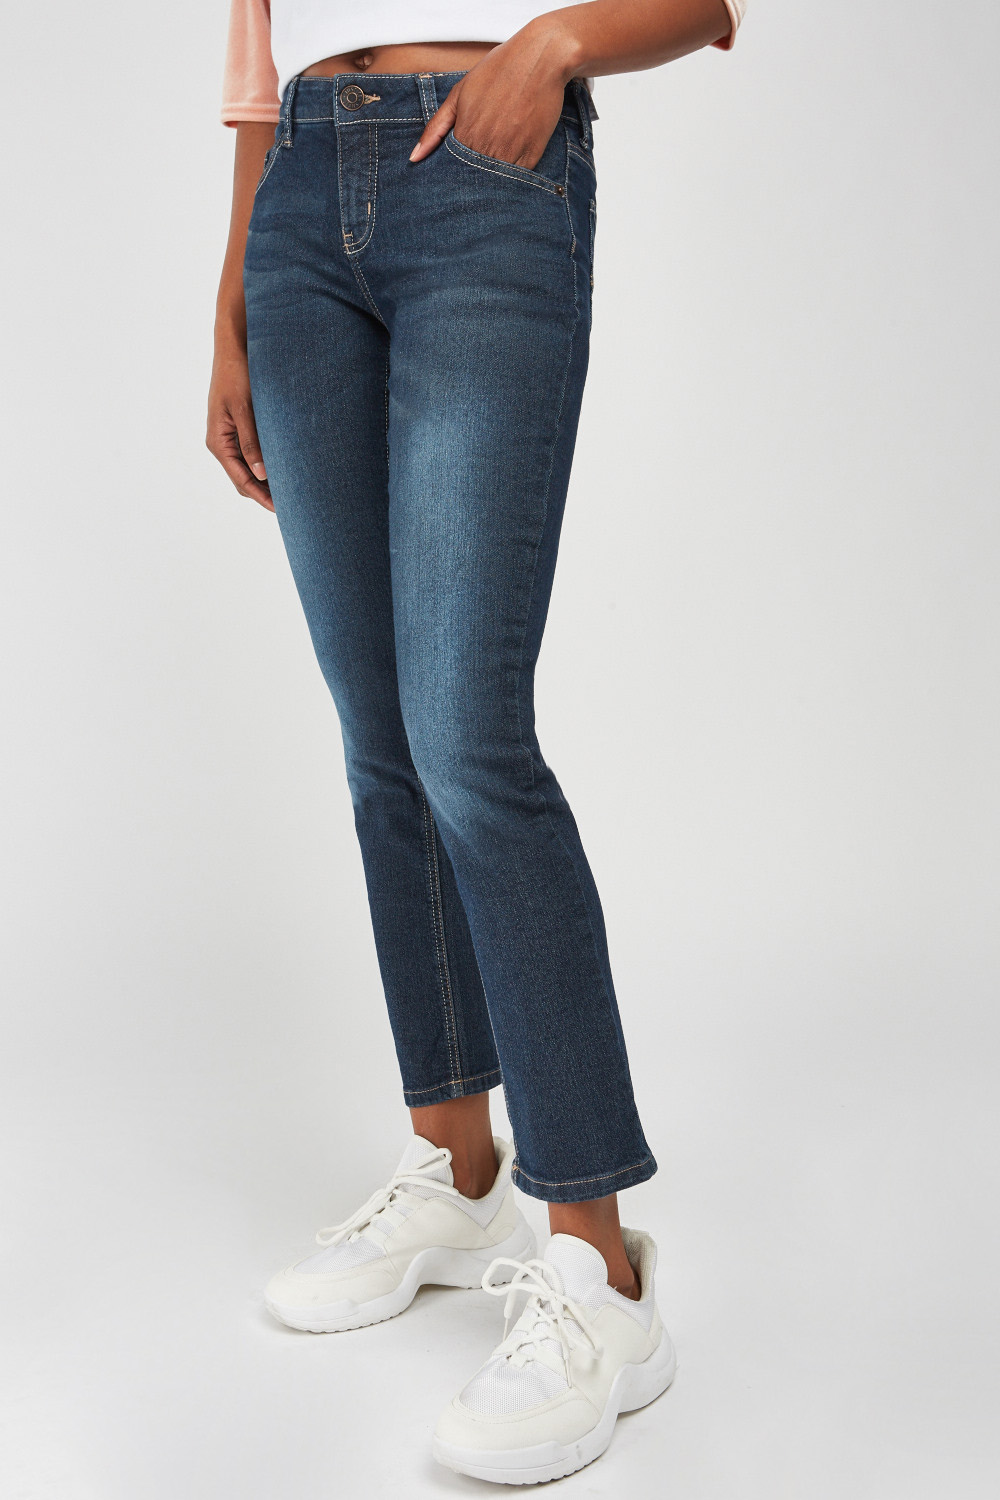 Straight Cut Denim Jeans - Just $7